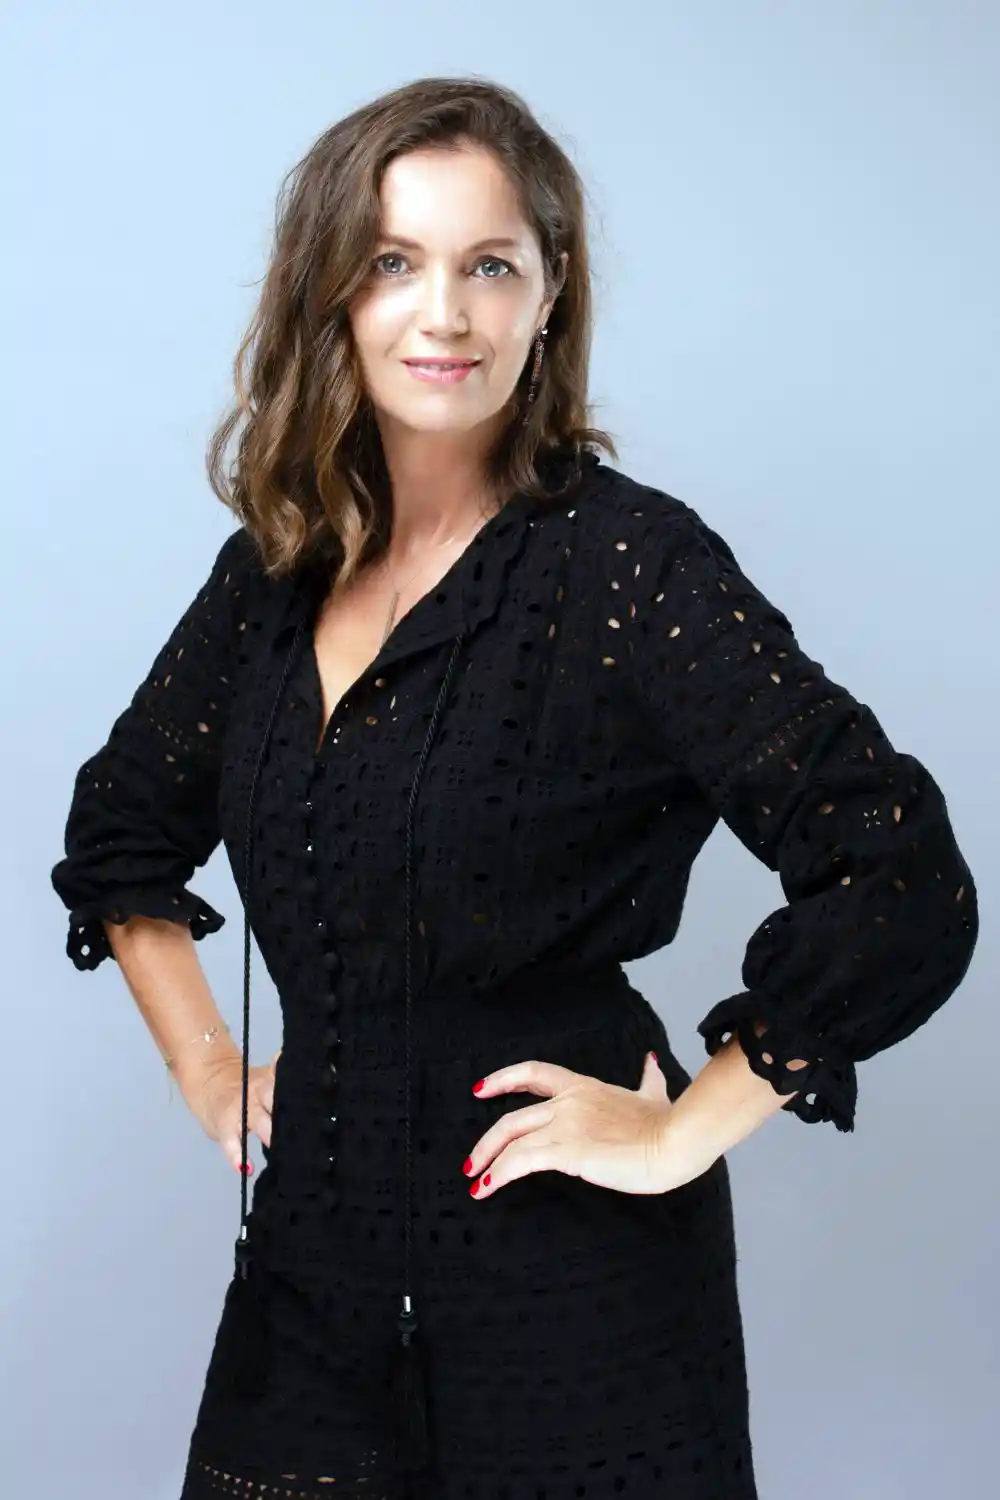 Female Journalist in Black Long Sleeve Dress